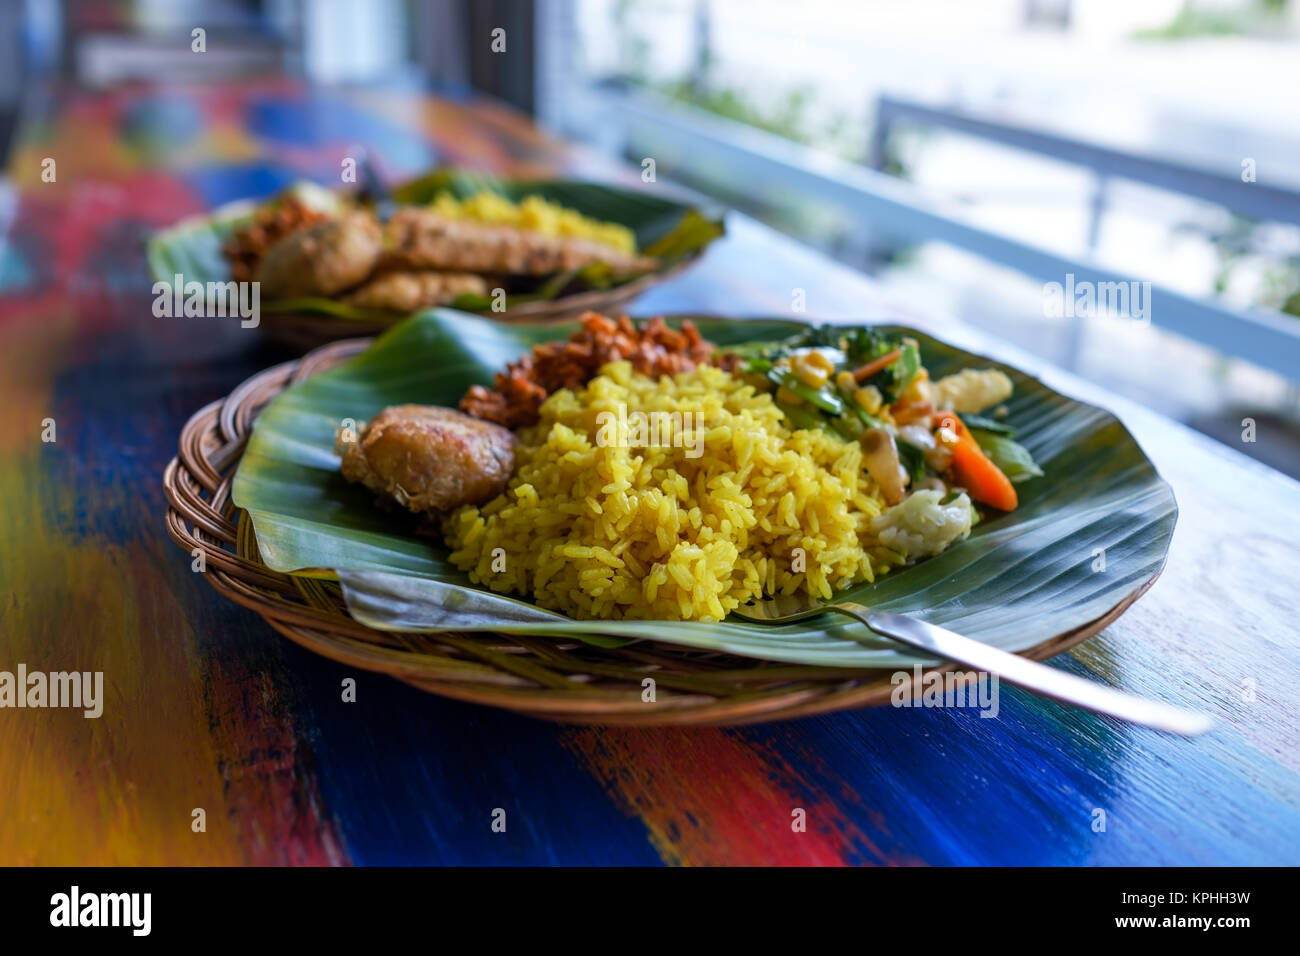 Vegane oder vegetarische Gerichte restaurant Seitenansicht, pikanten indischen Reis in der Schüssel. Gesunde traditionelle östliche lokales Essen ohne Fleisch Stockfoto